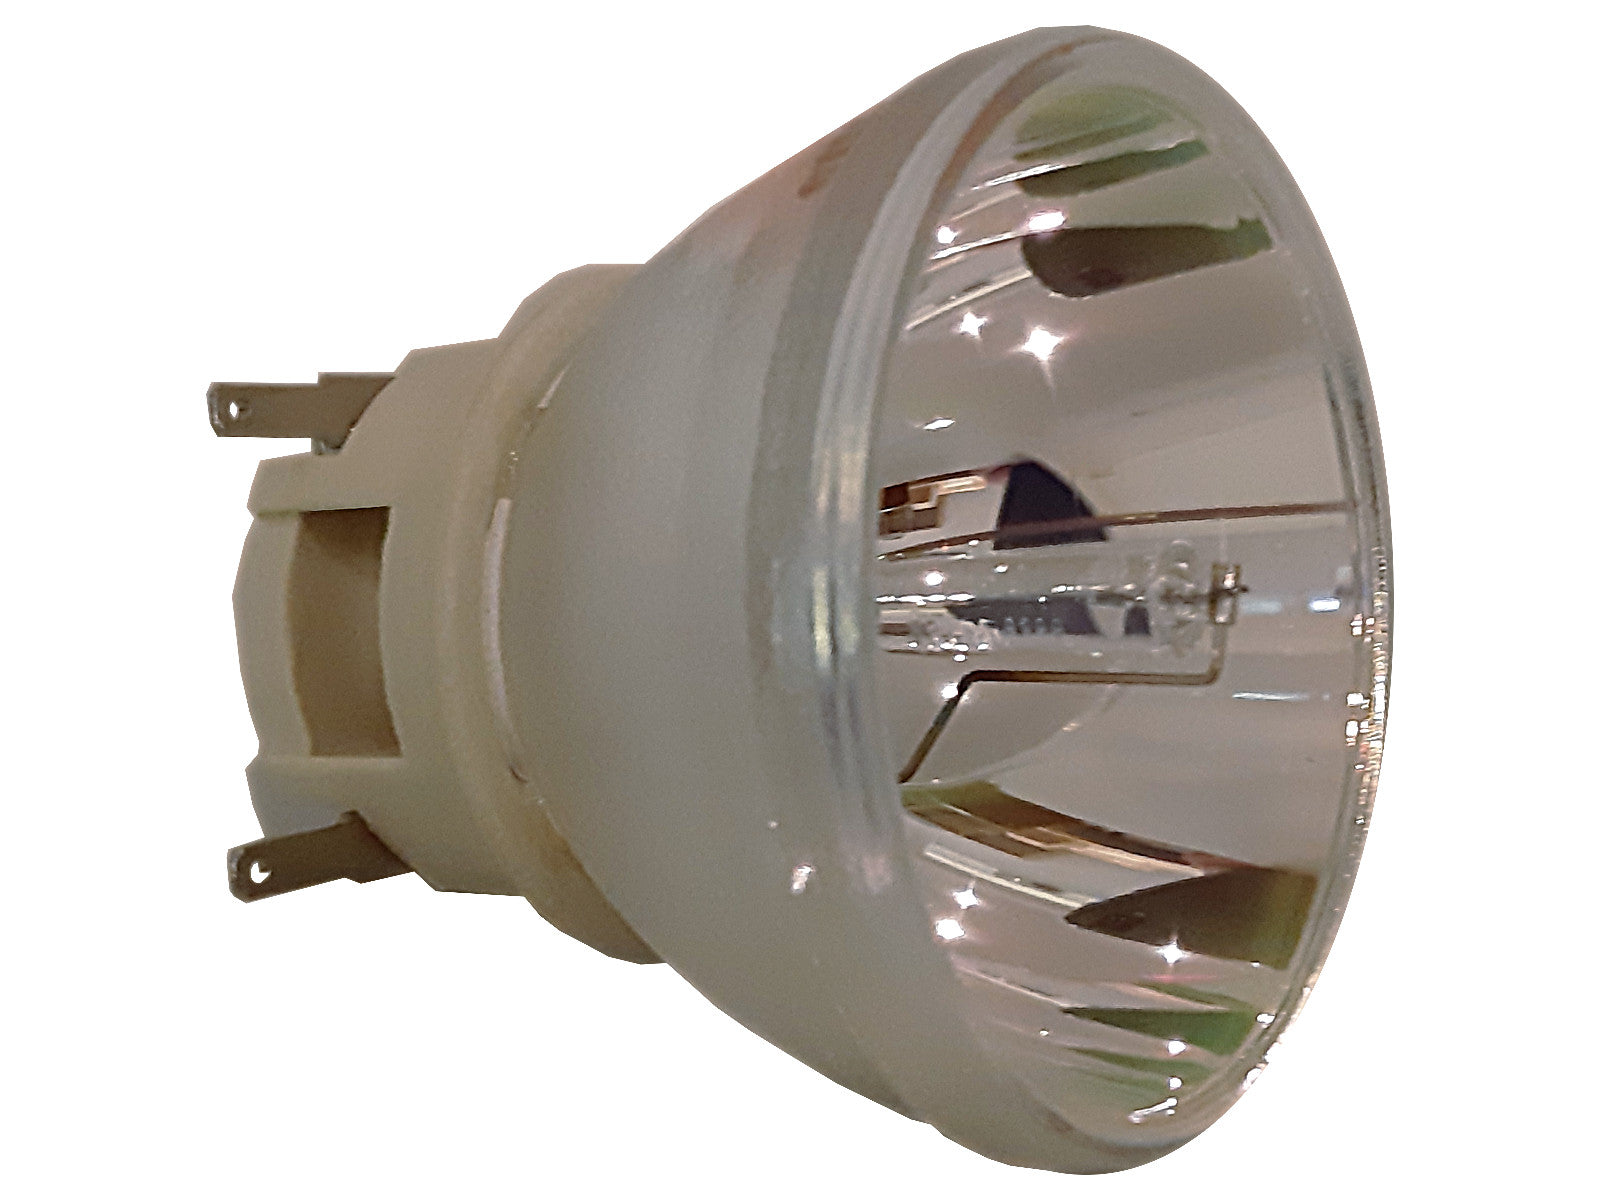 PHILIPS Beamerlampe für ACER UC.JRN11.001 MC.JRN11.002, MC.JRN11.001 - Bild 1